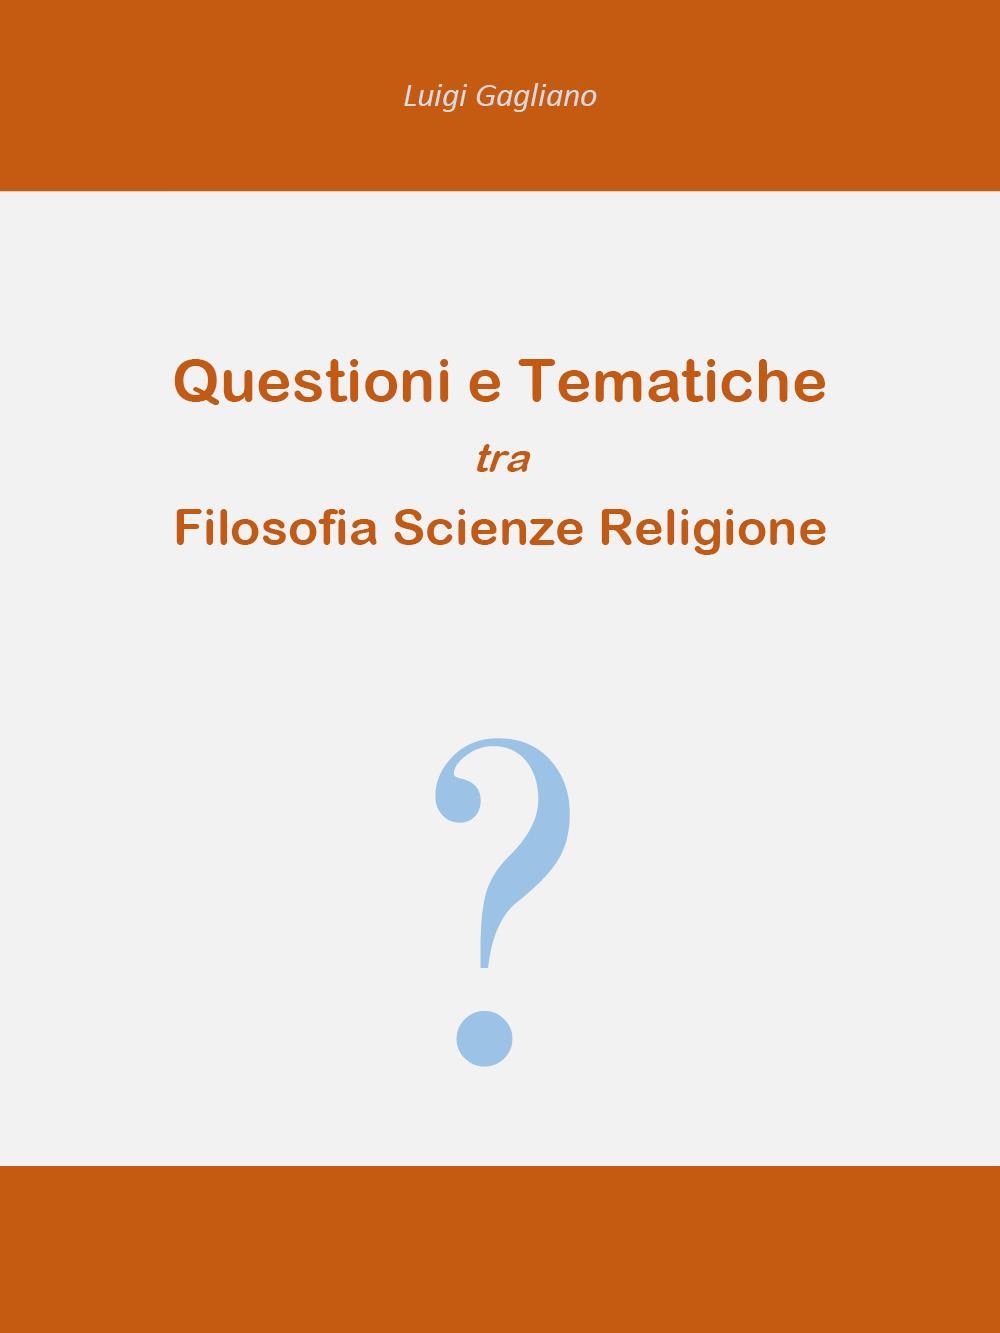 Questioni e tematiche tra filosofia scienze religione